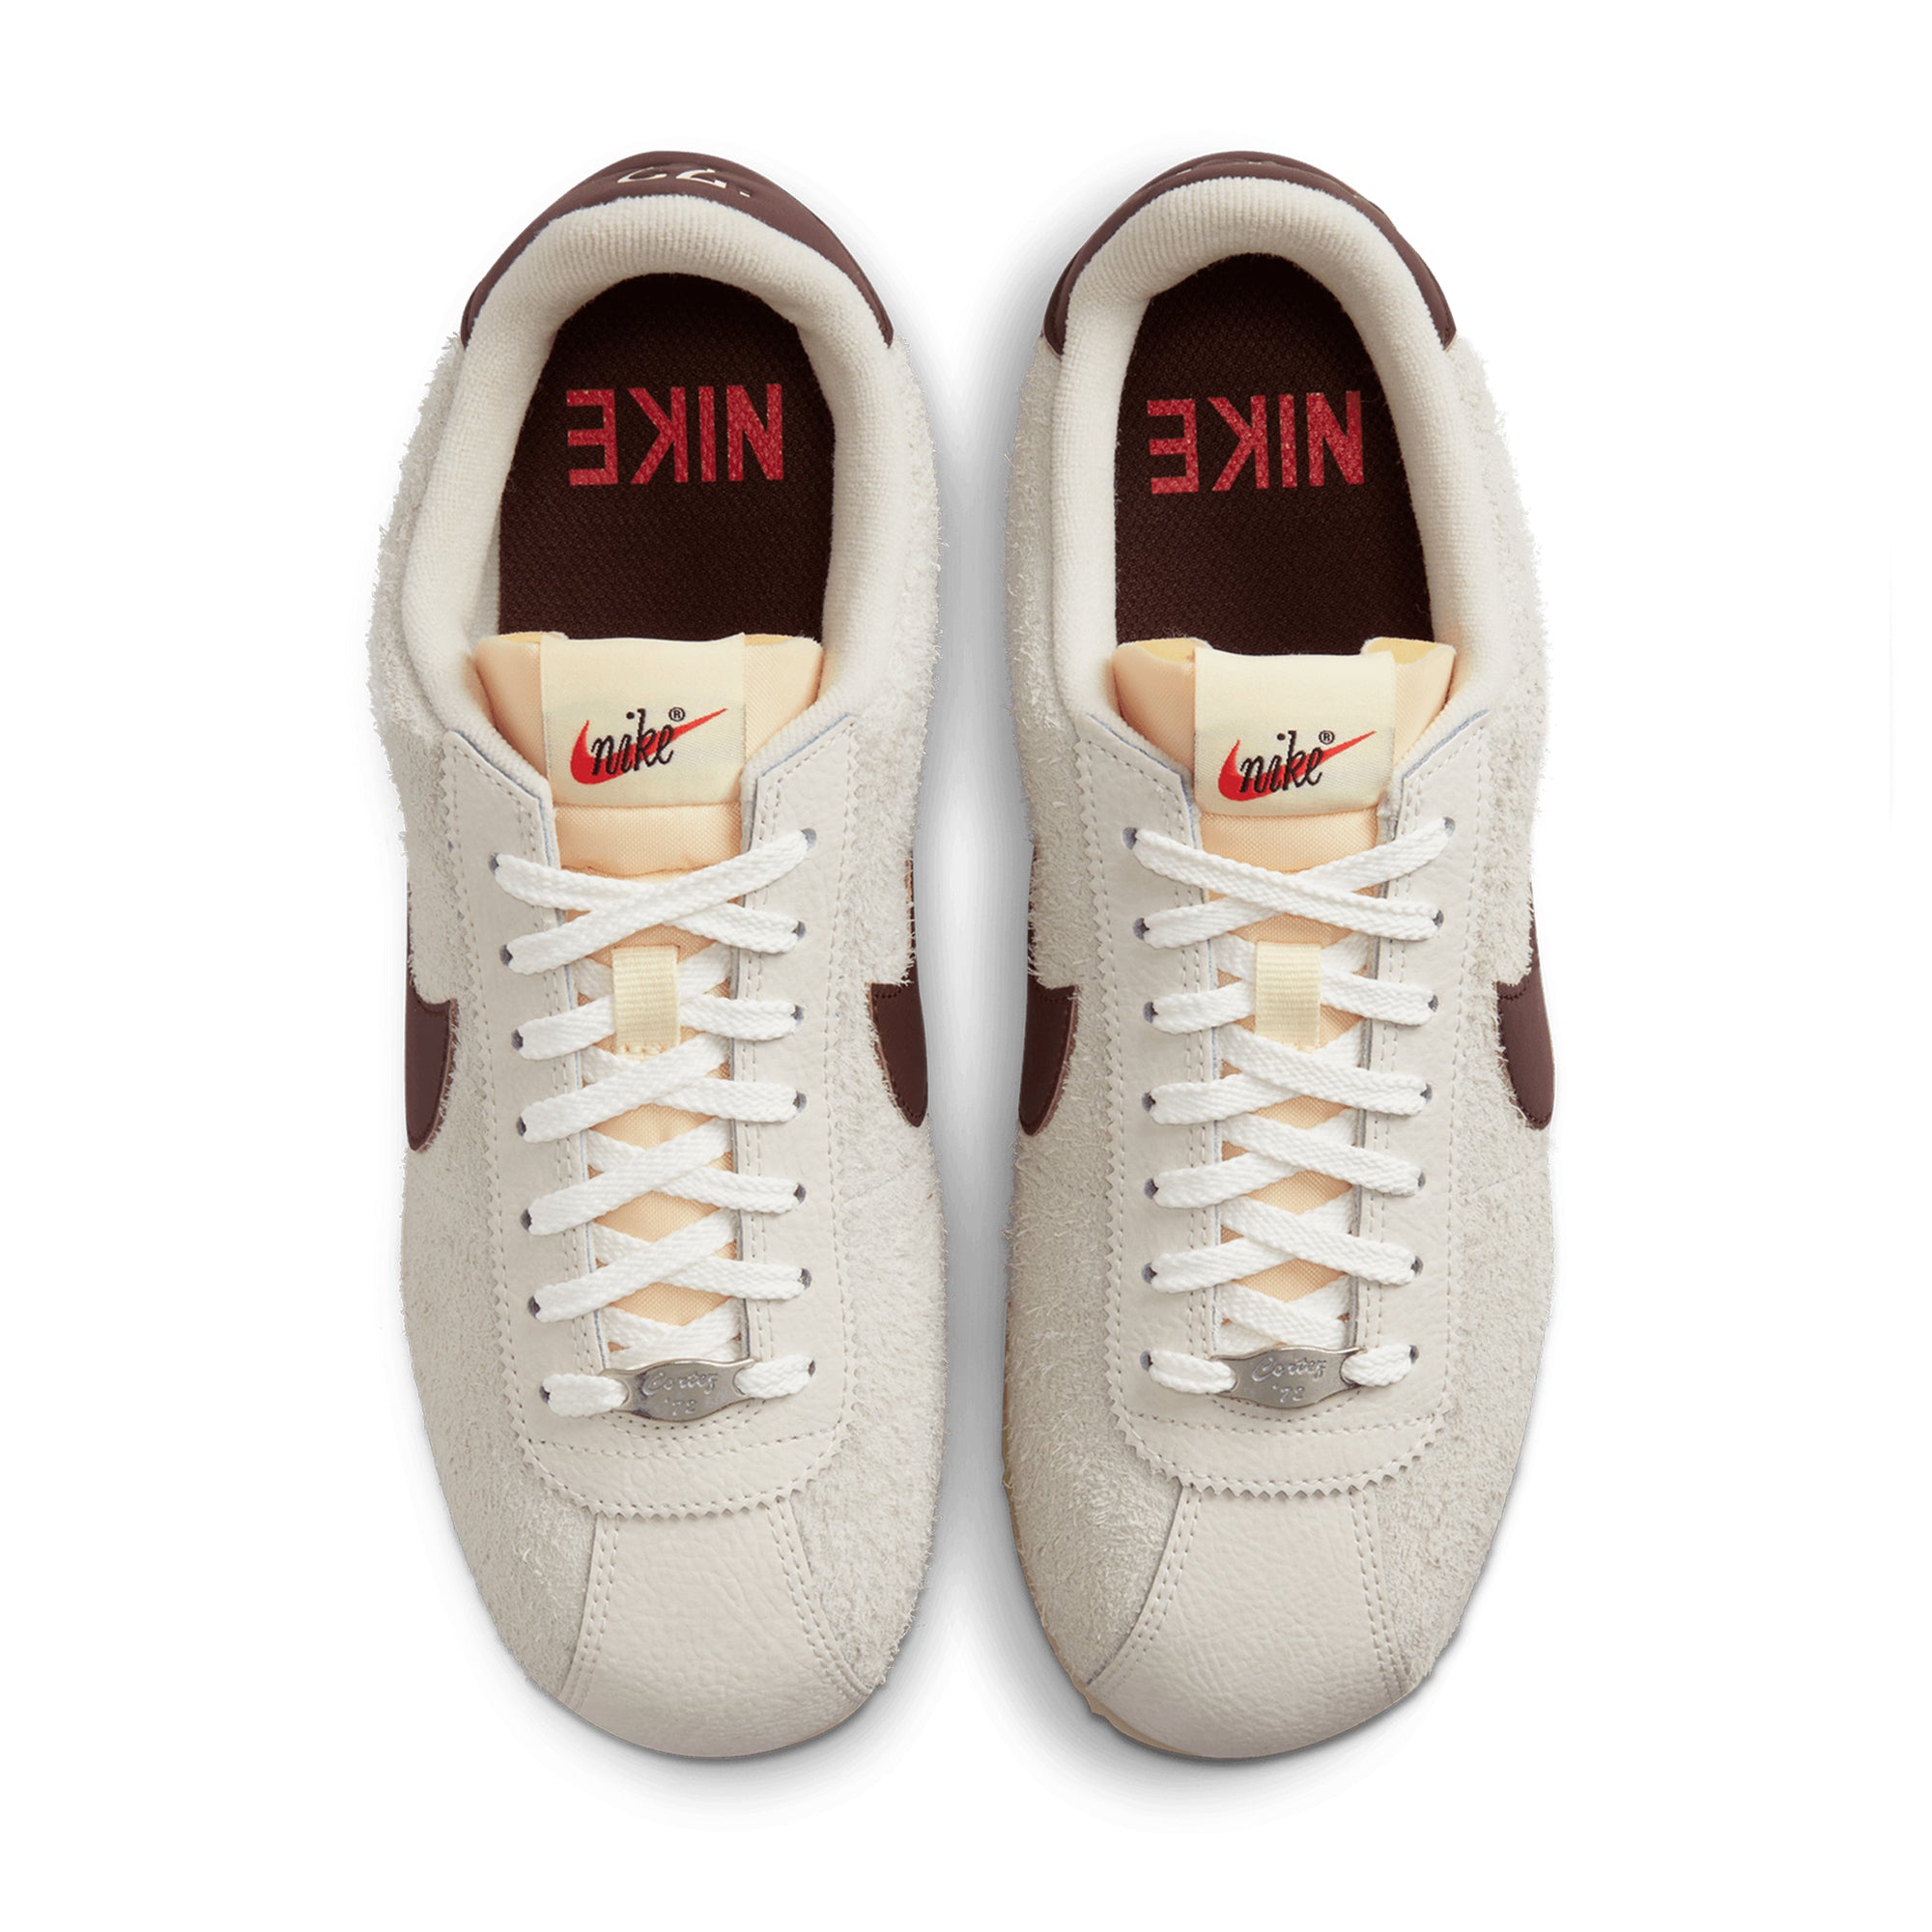 Nike Air Max Plus Grey Reflective CU3454 002 Release Date